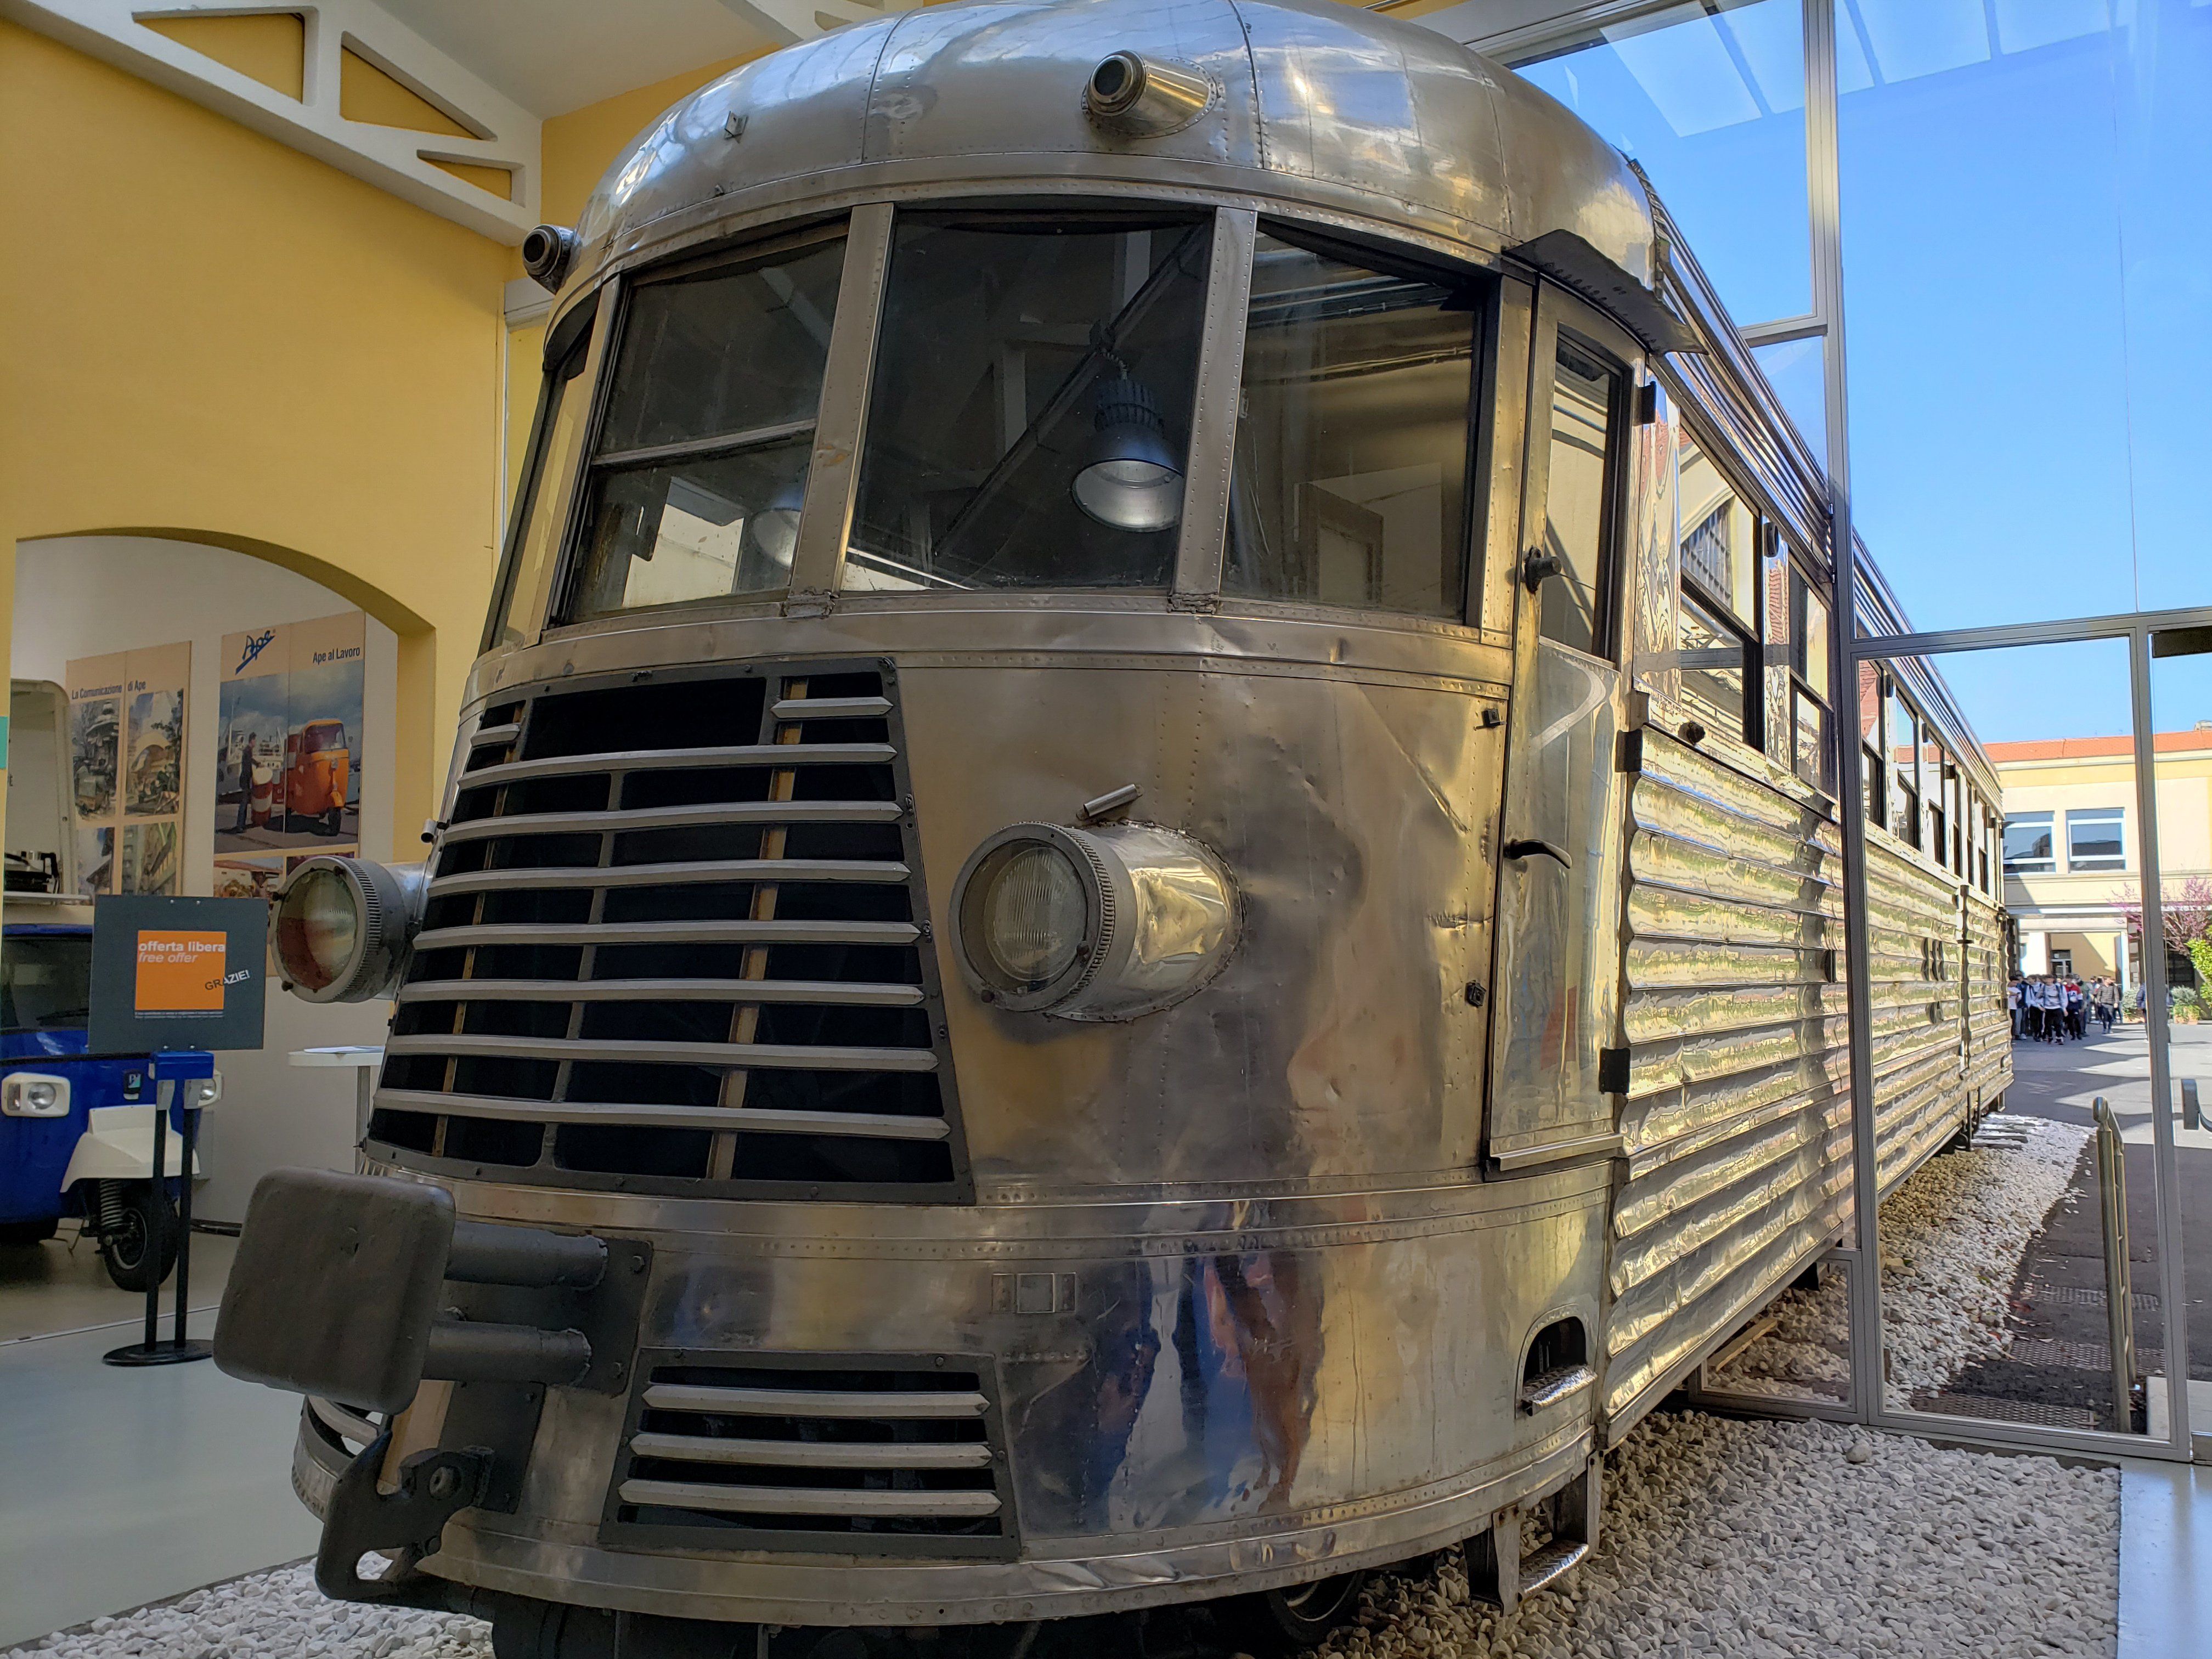 Vespa Streamlined train in silver